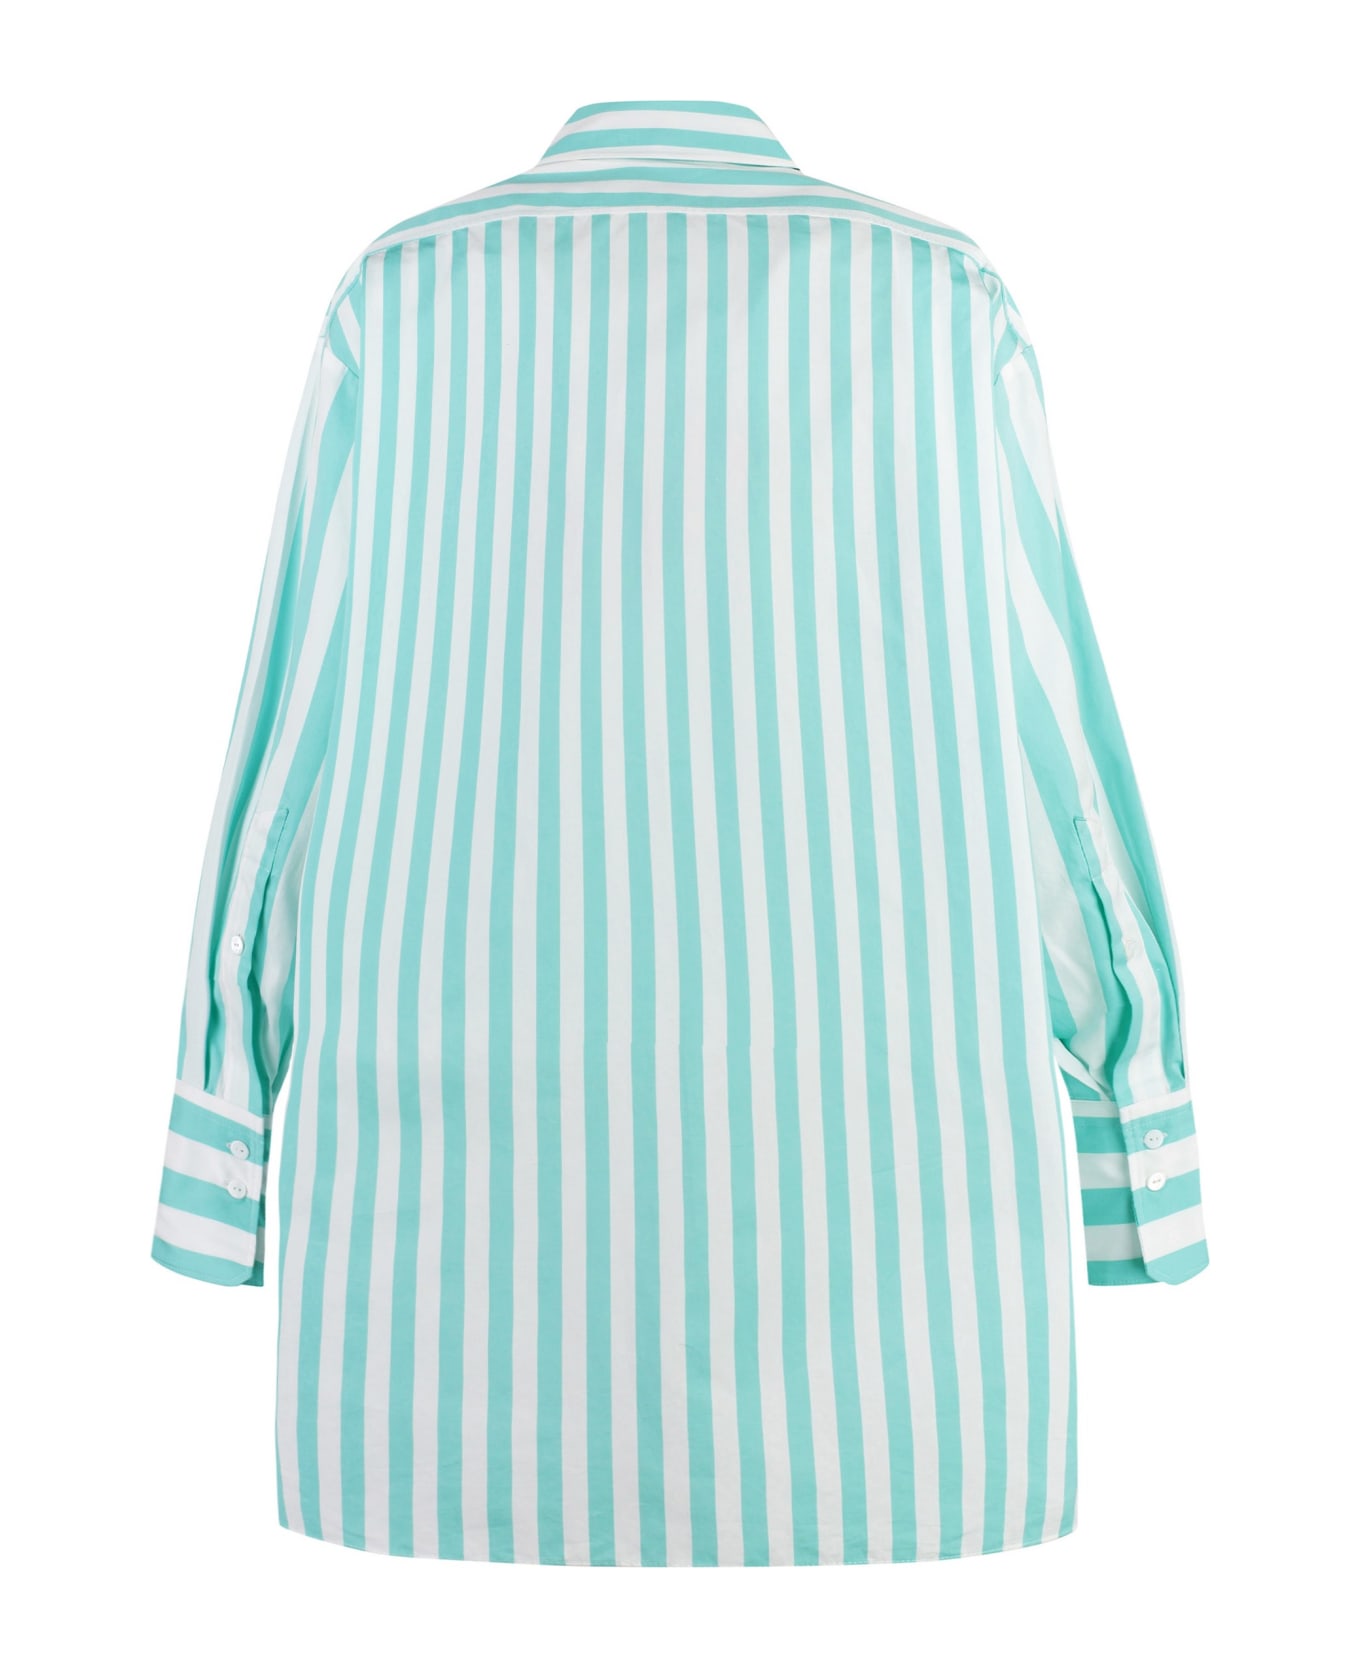 Patou Striped Cotton Shirtdress - Verde シャツ